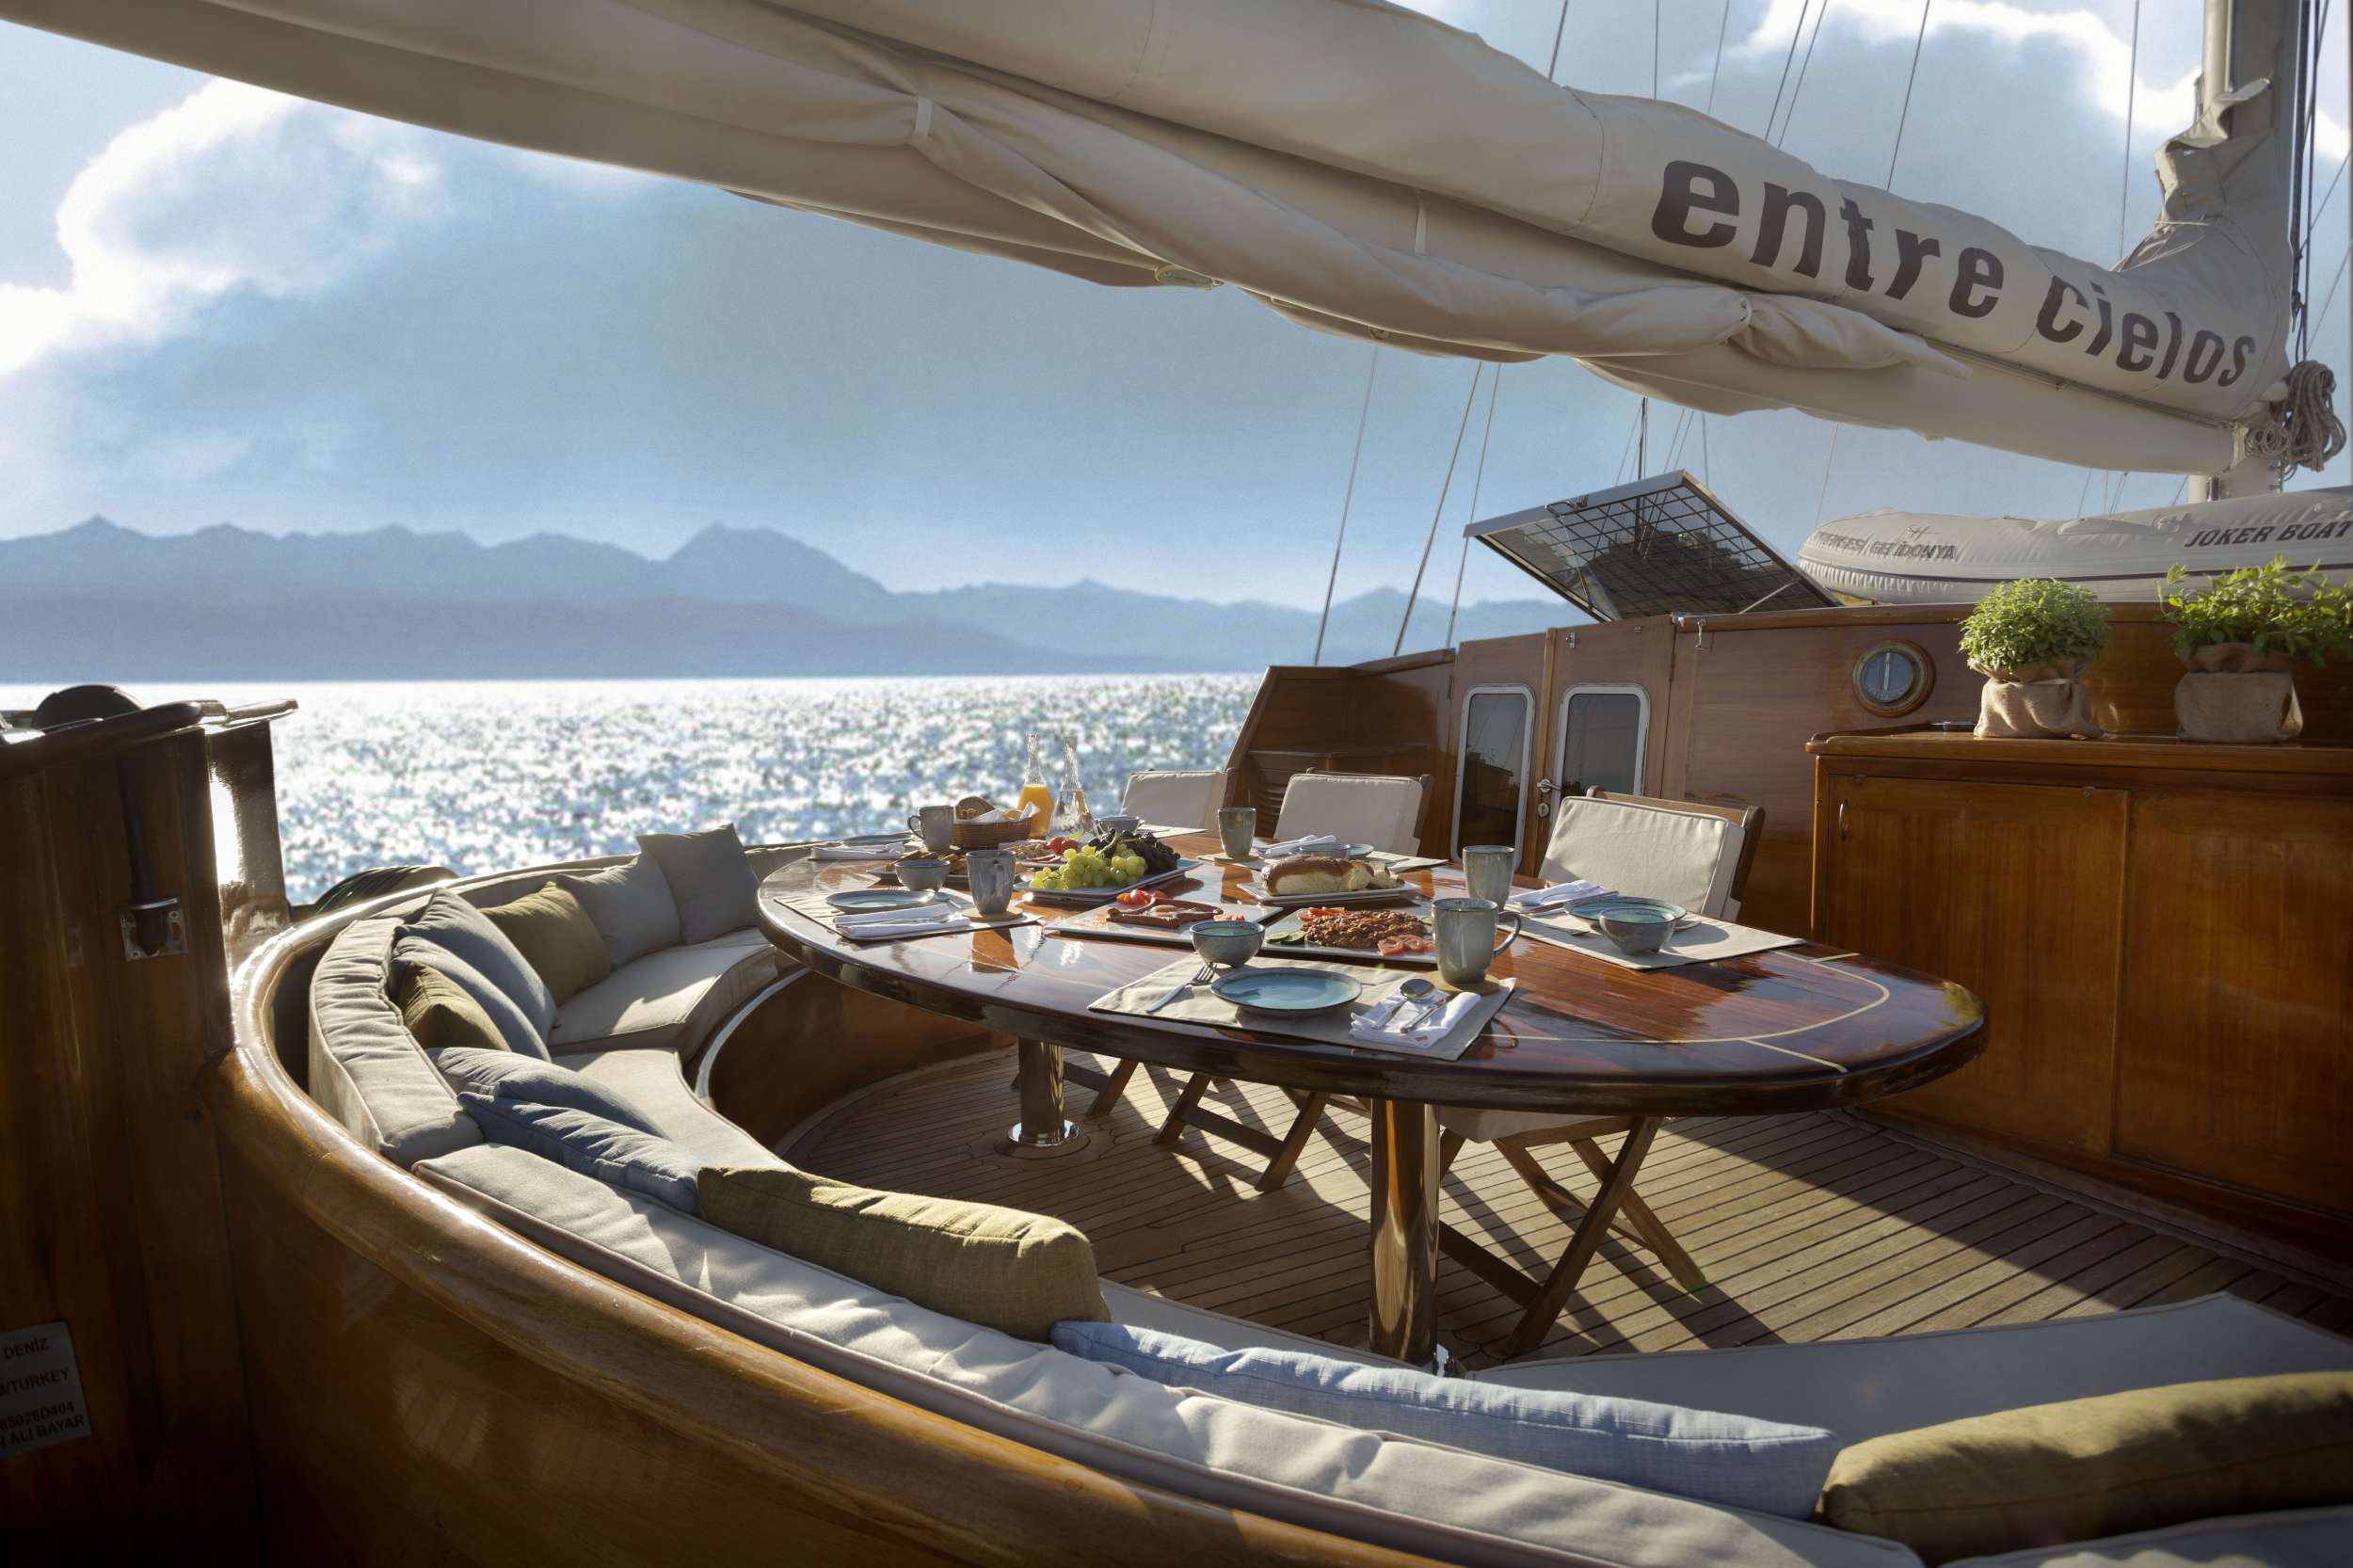 ENTRE CIELOS - Yacht Charter Achillio & Boat hire in Greece 3